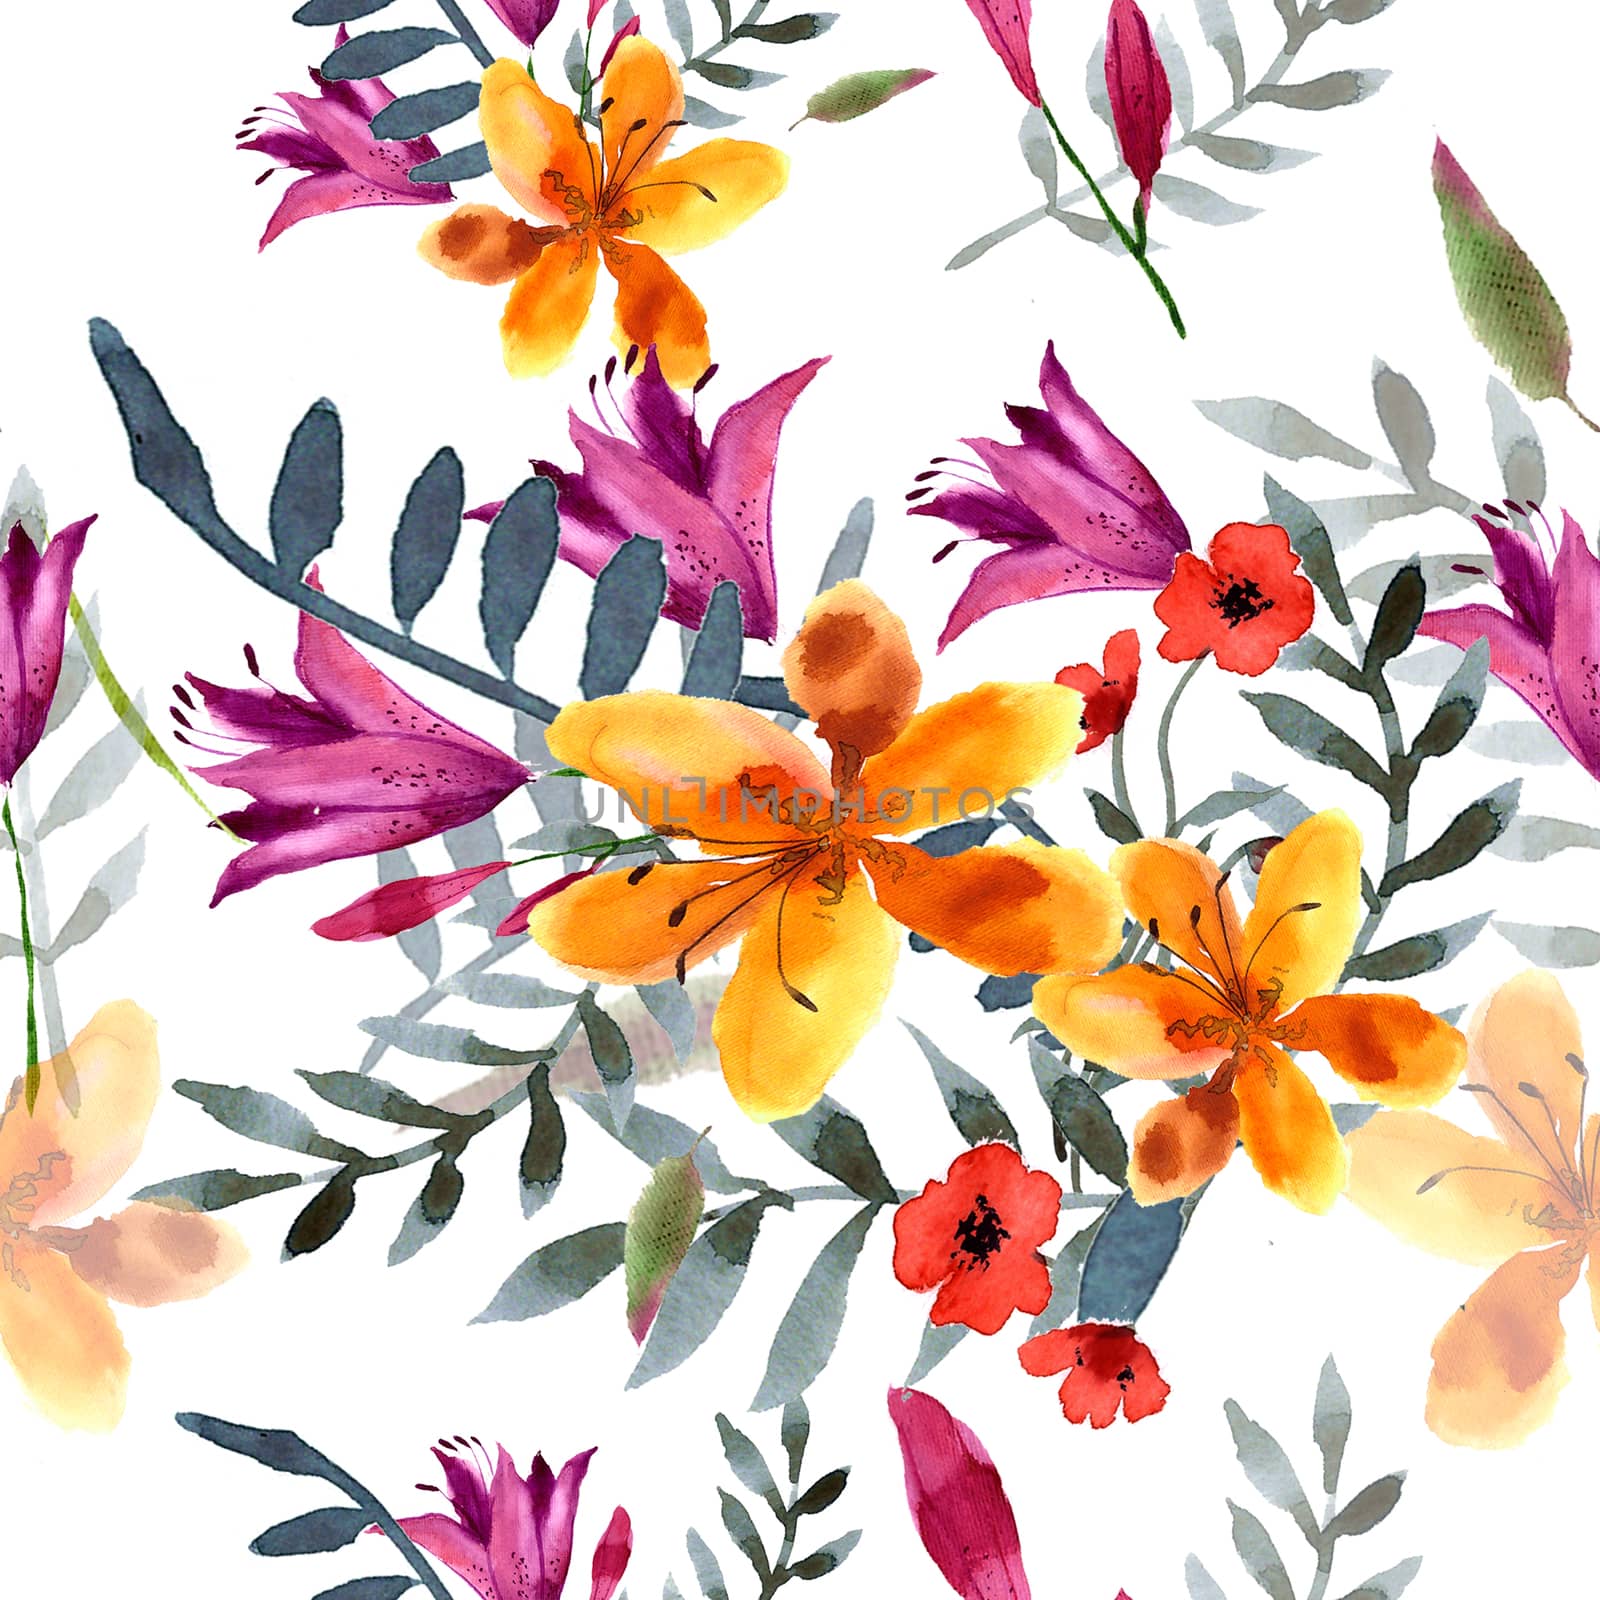 Wildflowers blooming delicate flowers background painted  watercolors.  by Rasveta